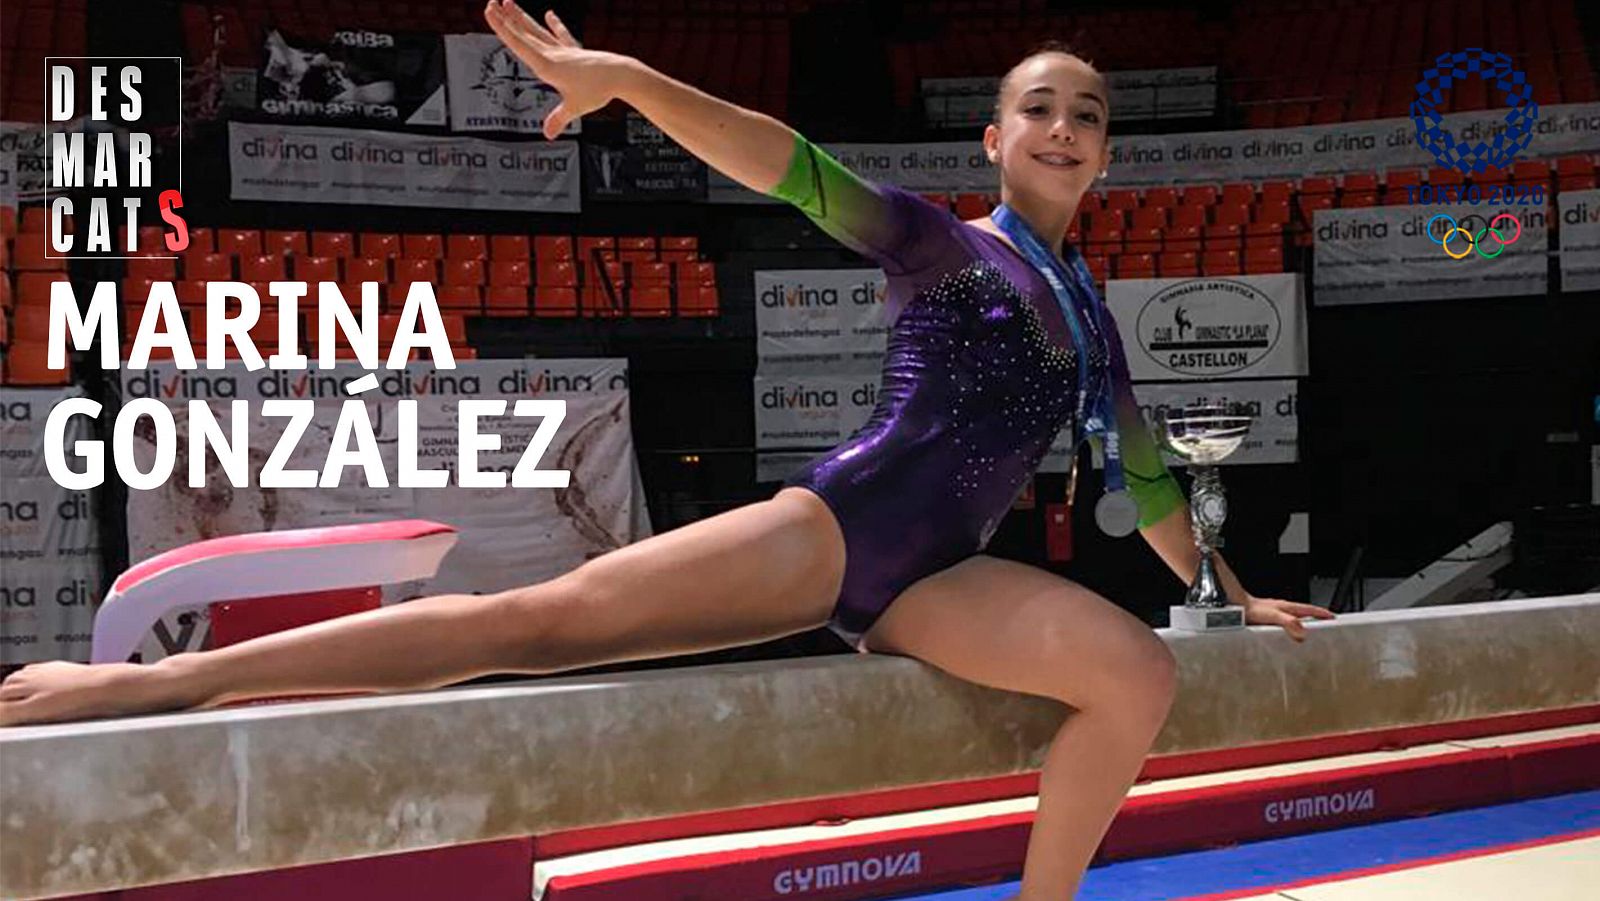 Desmarcats - Marina González, gimnasta